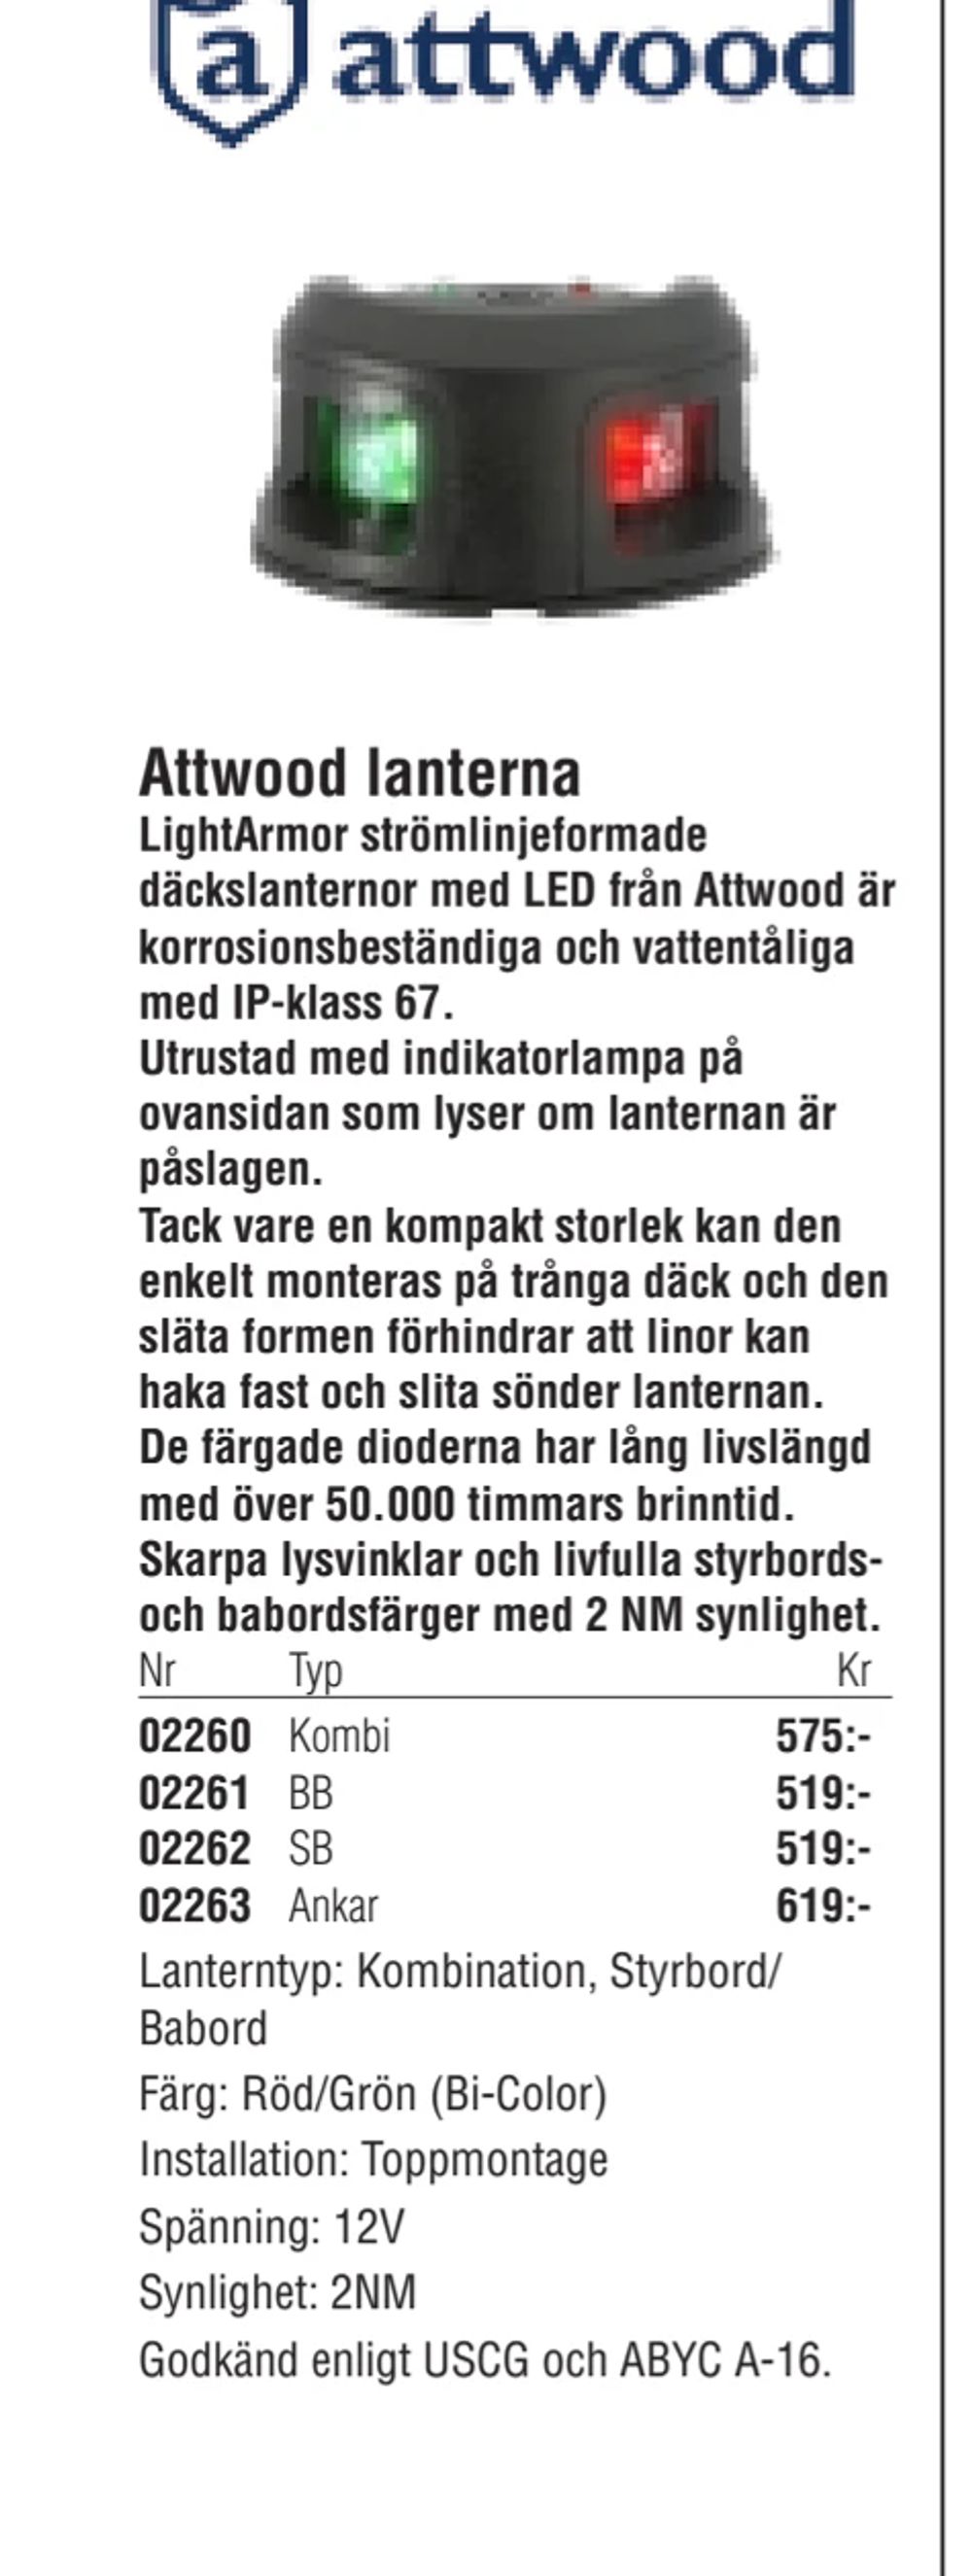 Erbjudanden på Attwood lanterna från Erlandsons Brygga för 575 kr